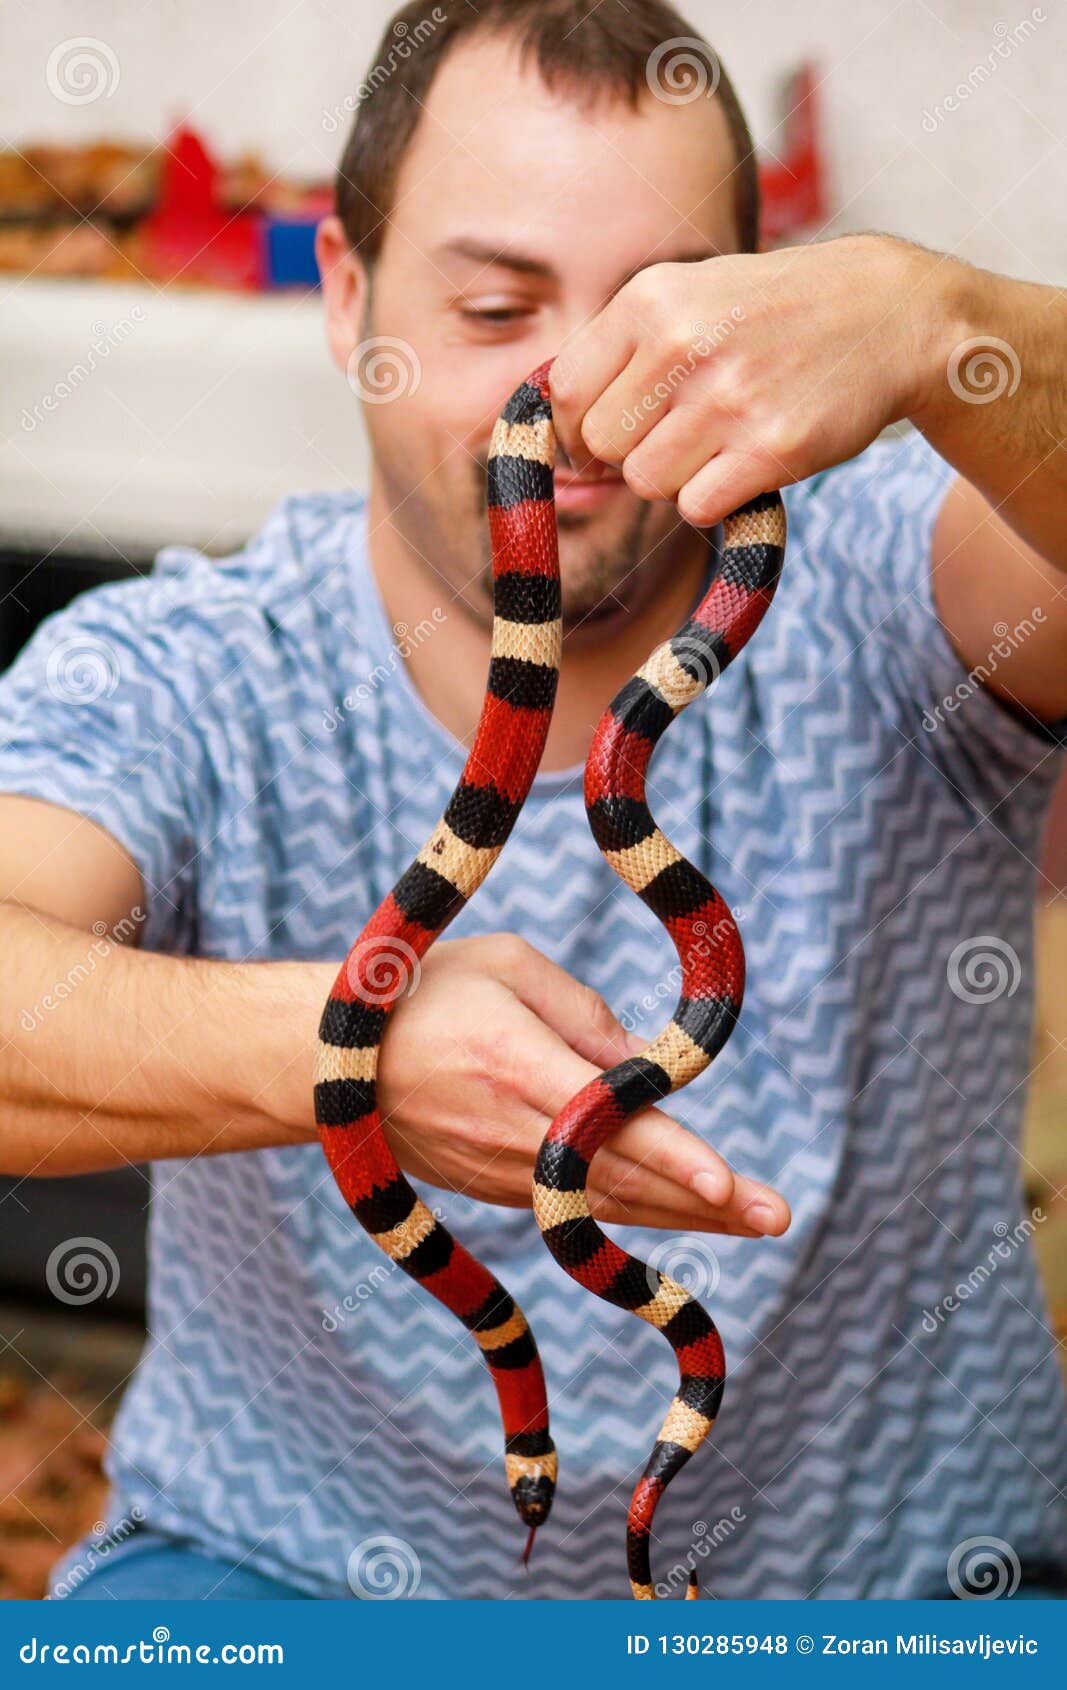 Ребенок держит змею. Человек со змеями. Человек держит змею.